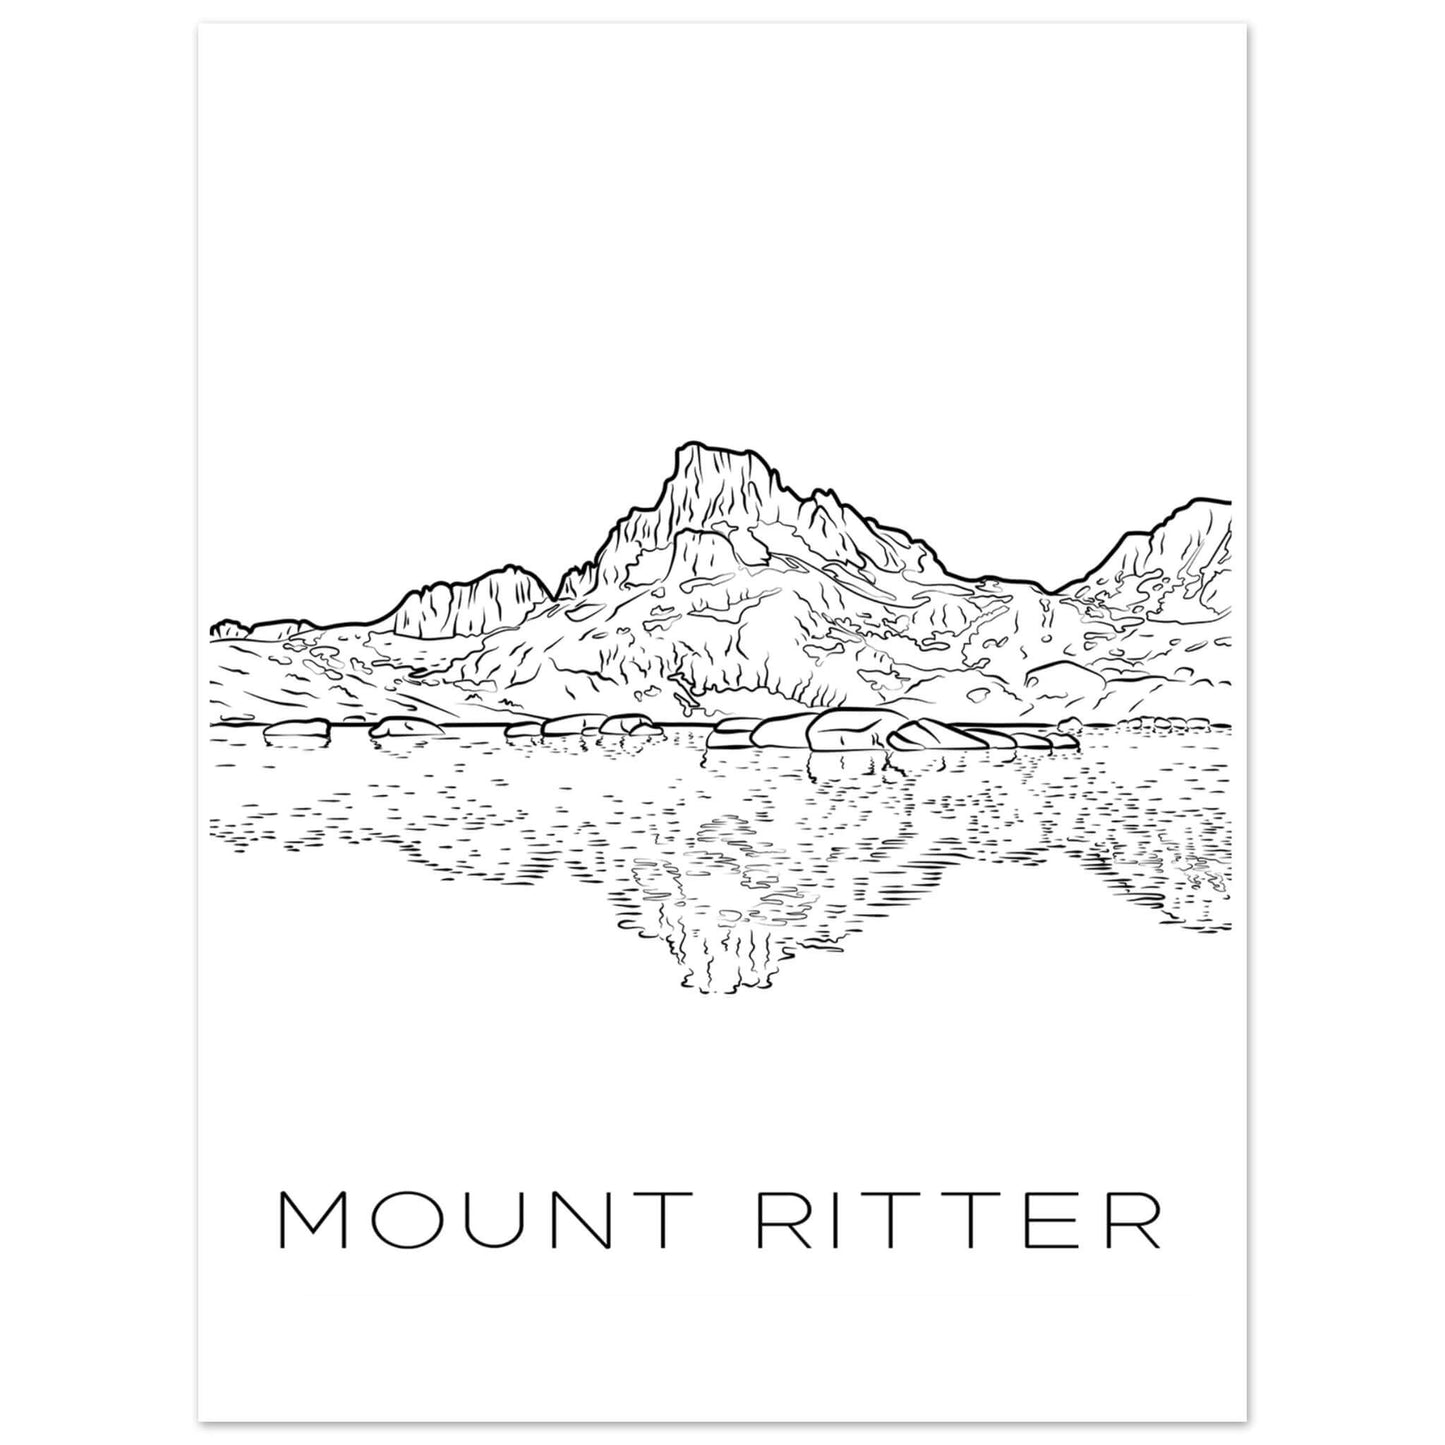 Mount Ritter - Black & White